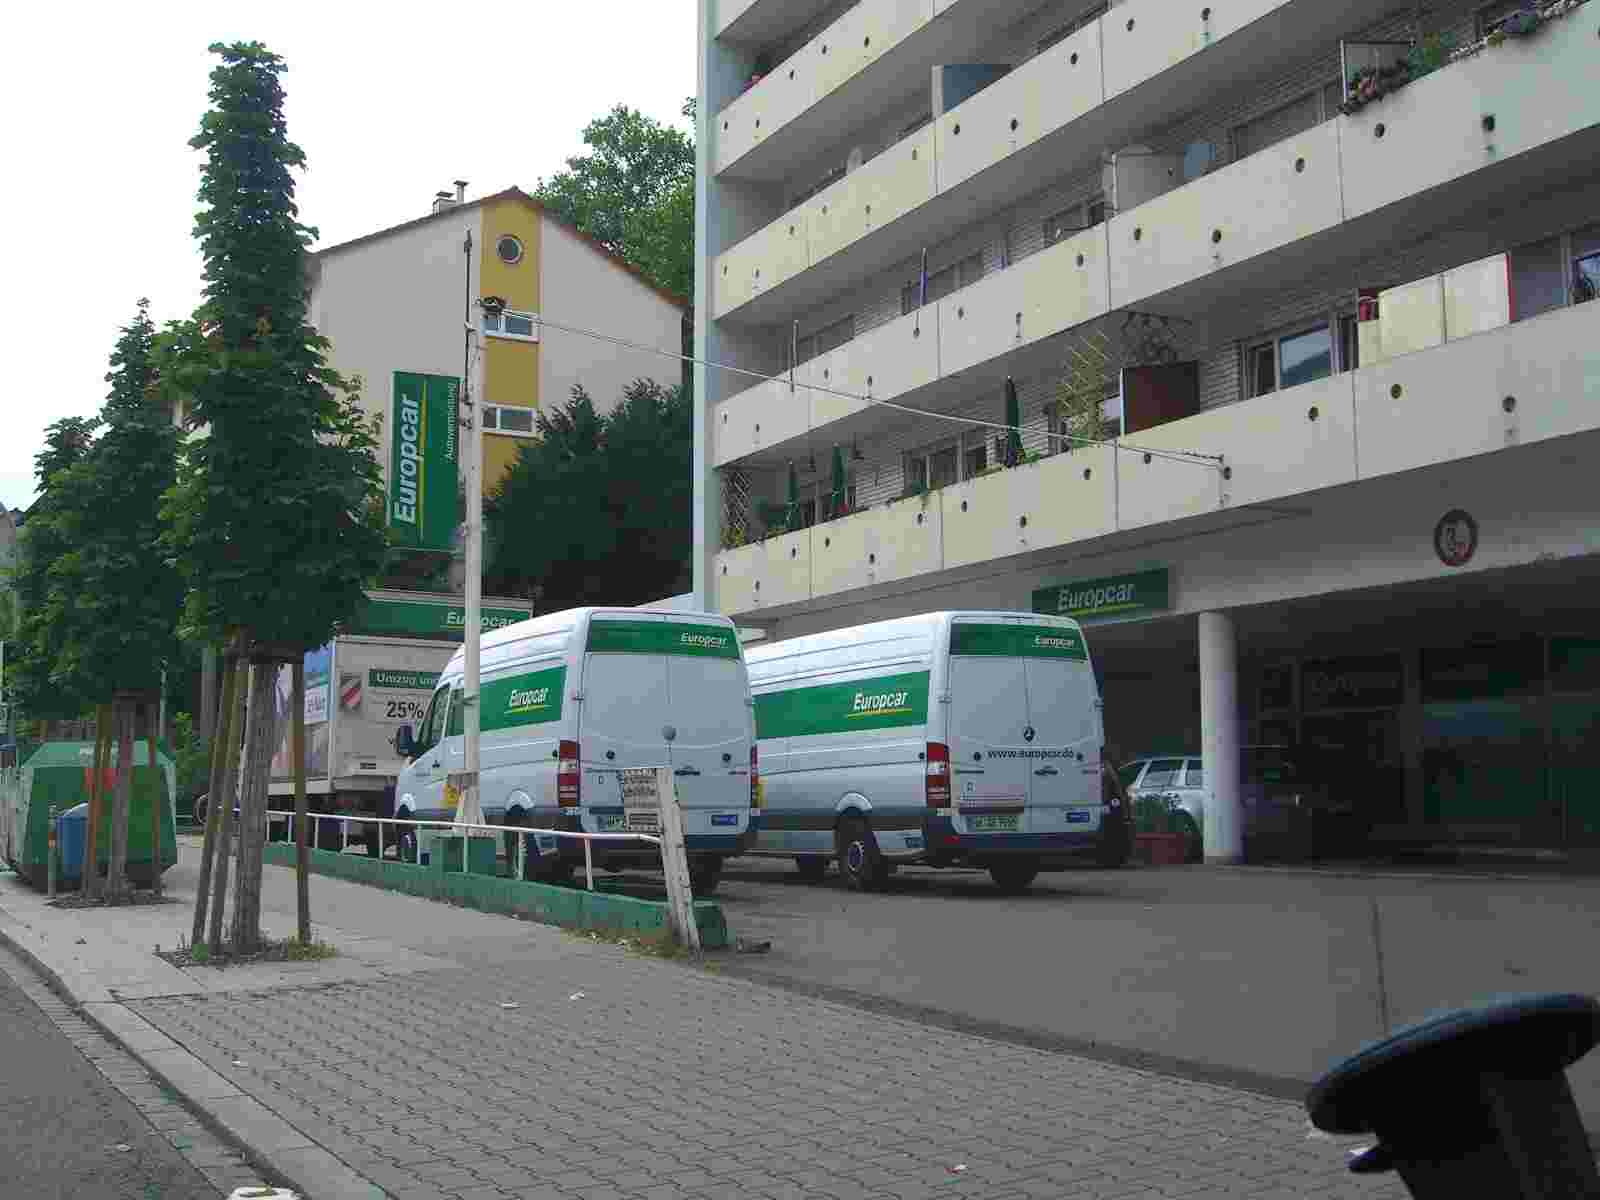 Bild 1 Europcar Autovermietung GmbH Pforzheim in Pforzheim